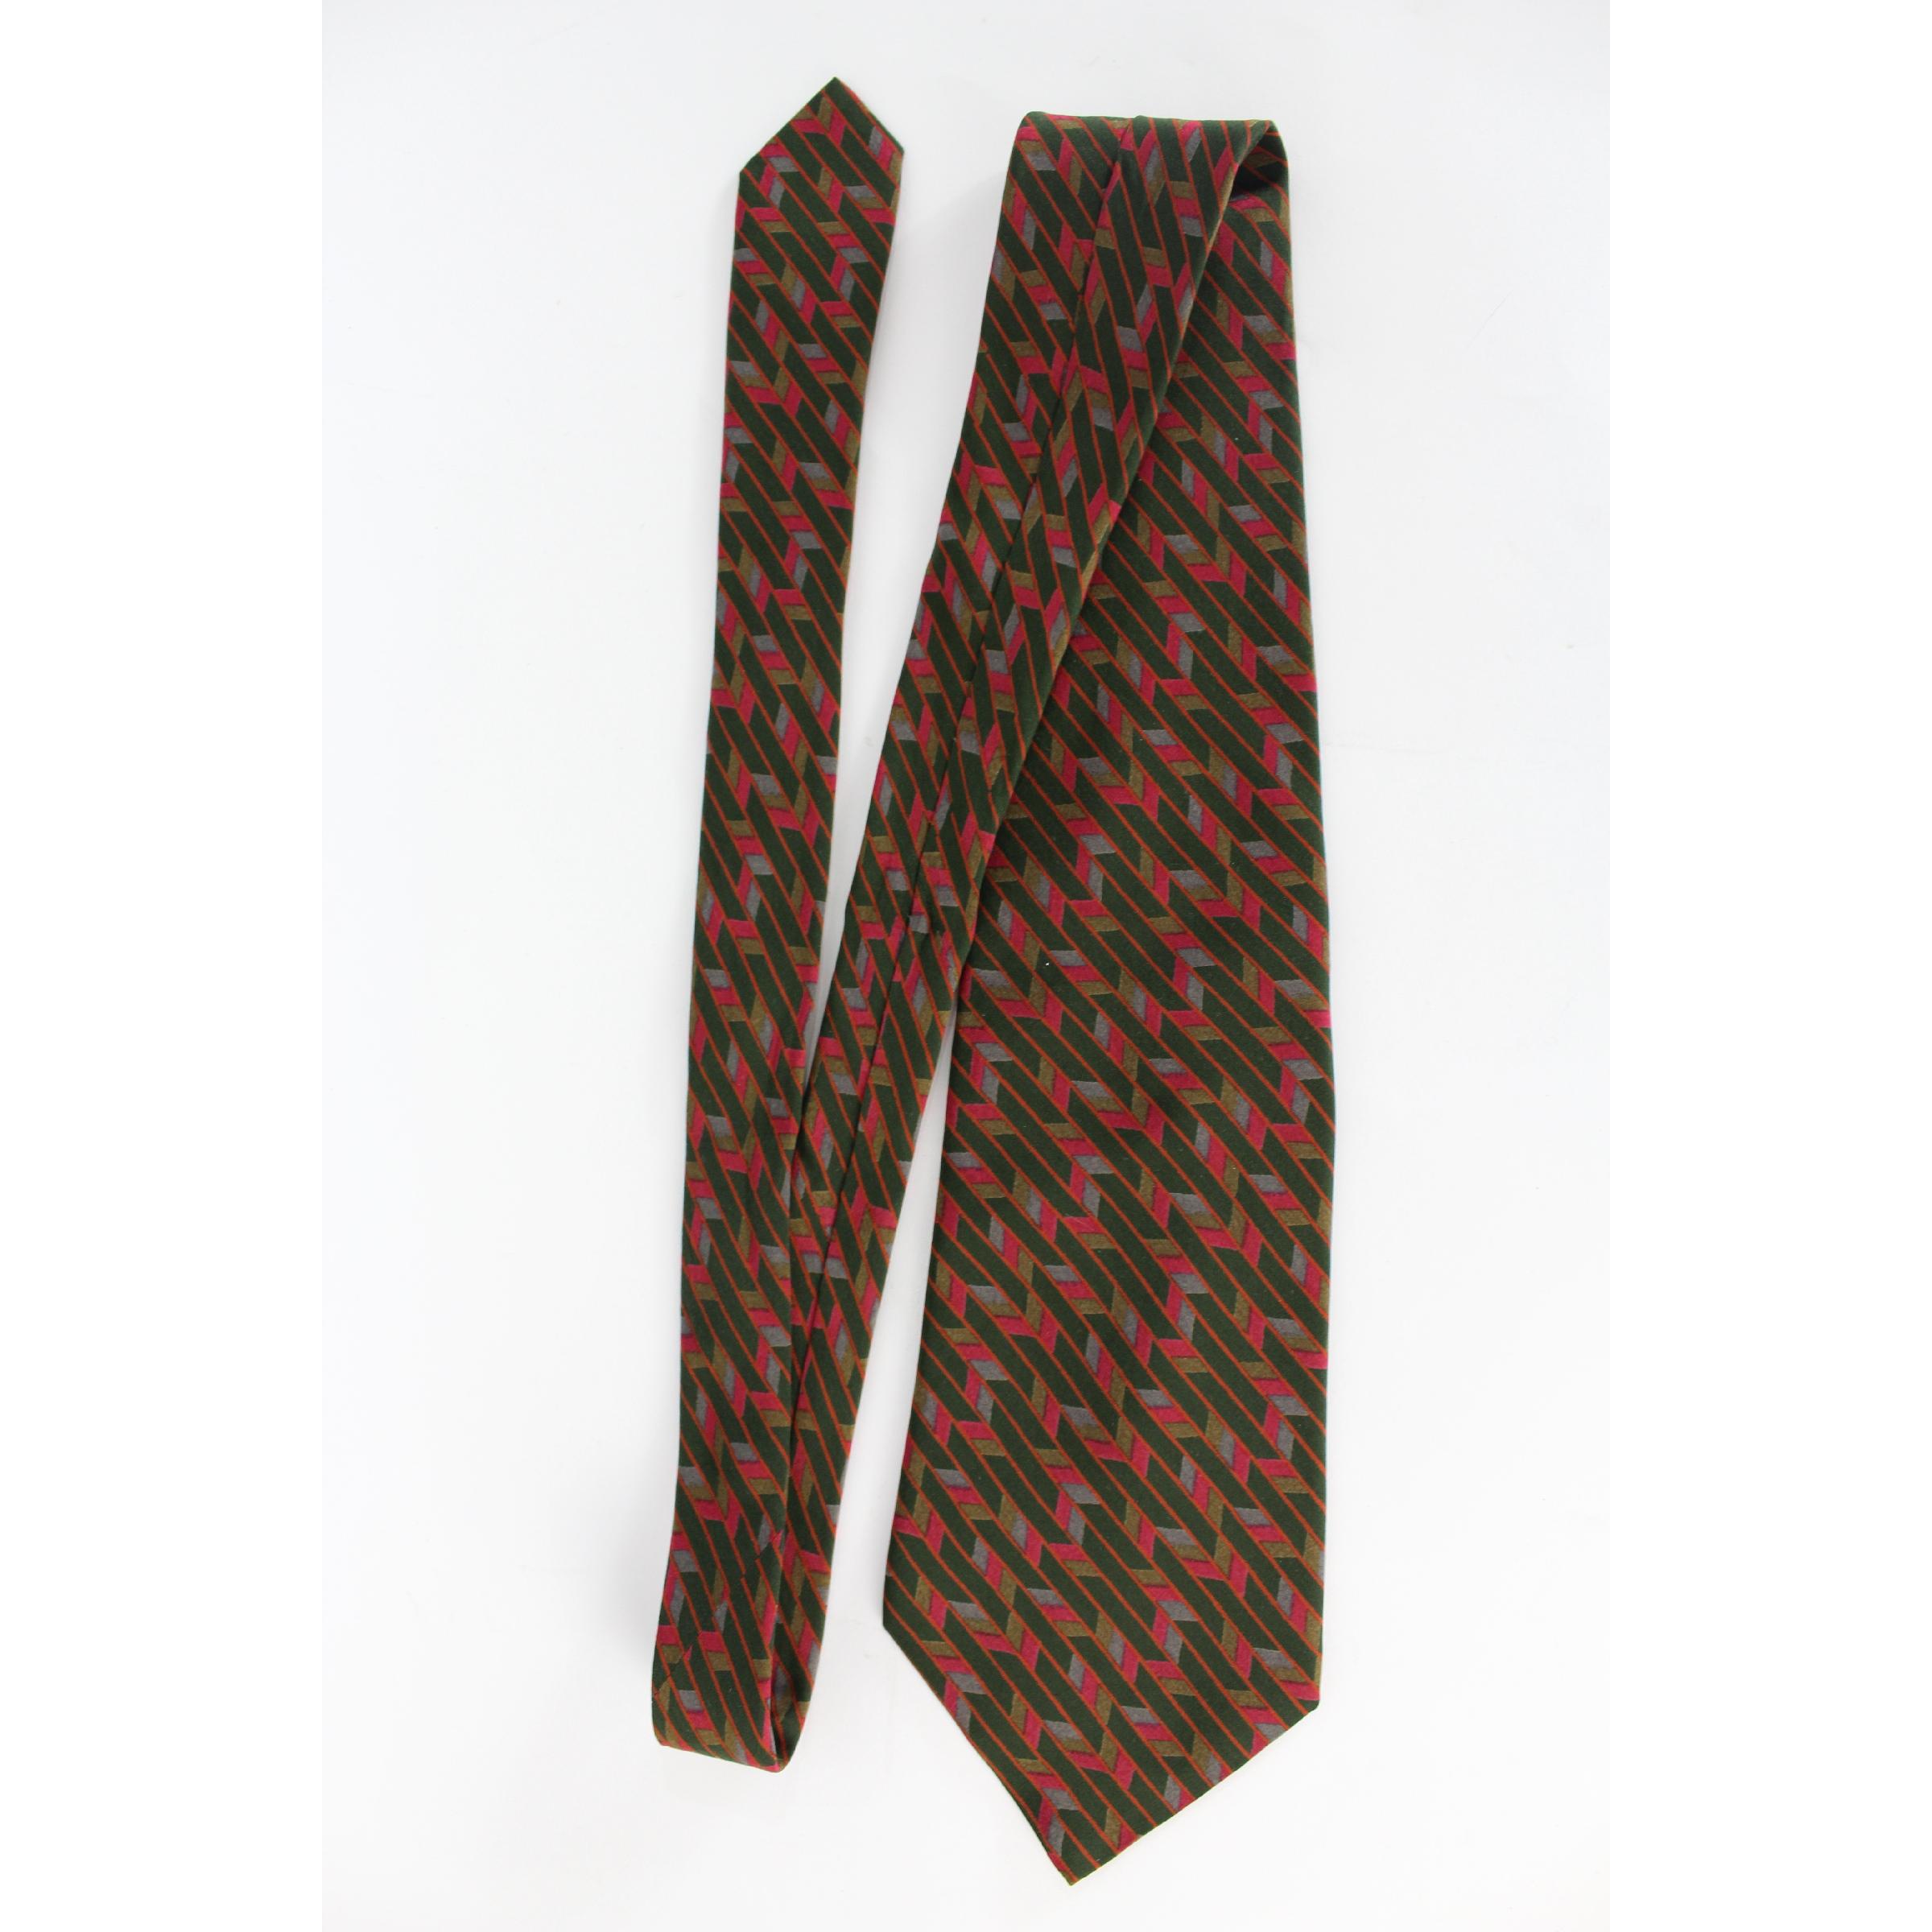 Cravate vintage Yves Saint Laurent, 100% soie, motifs géométriques en rouge, orange et vert. 1990s. Fabriquées en Italie. Excellentes conditions.

Longueur : 136 cm

Largeur : 11 cm